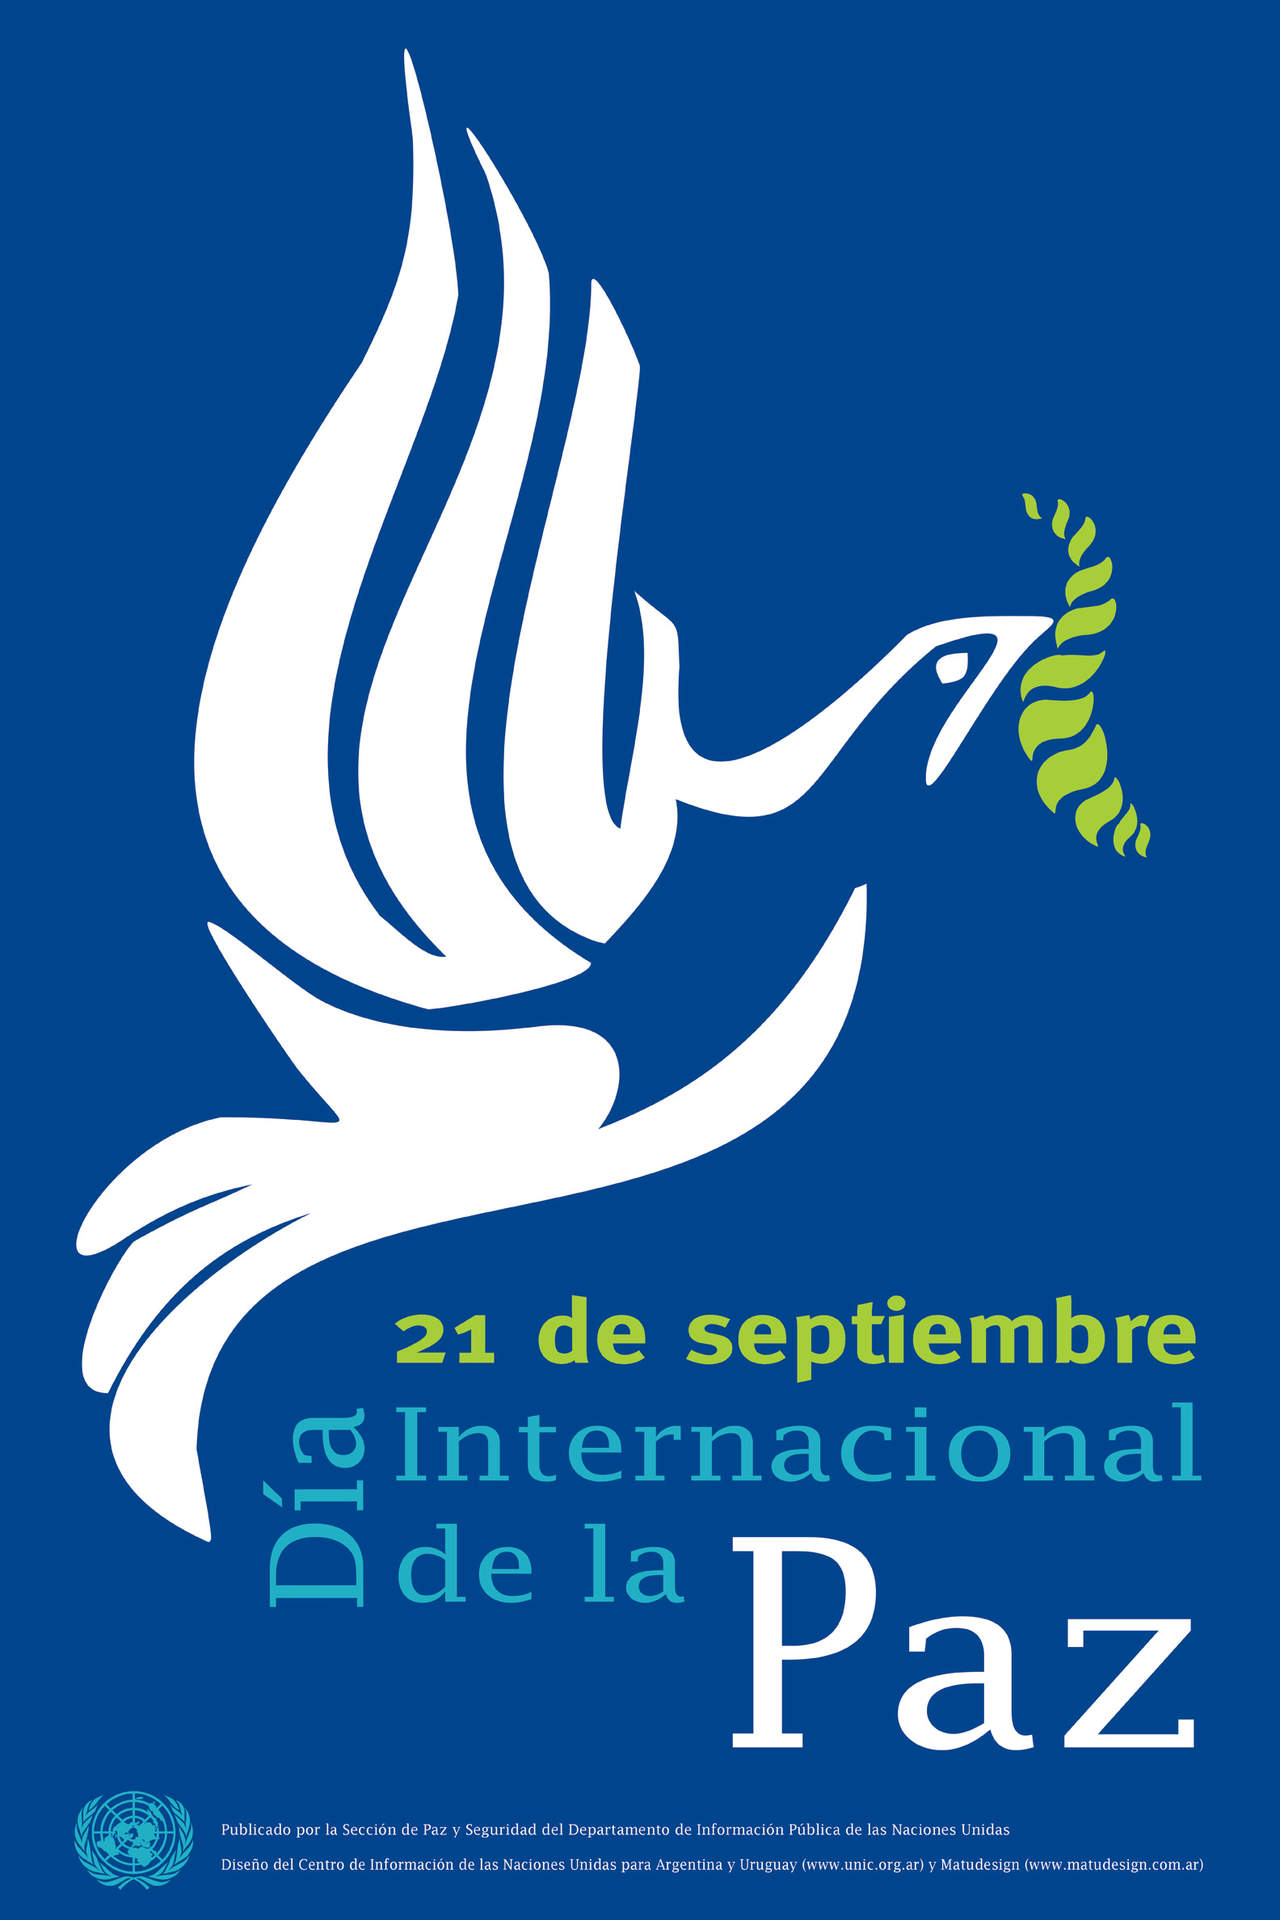 2002: El Día Internacional de la Paz se celebra por primera ocasión